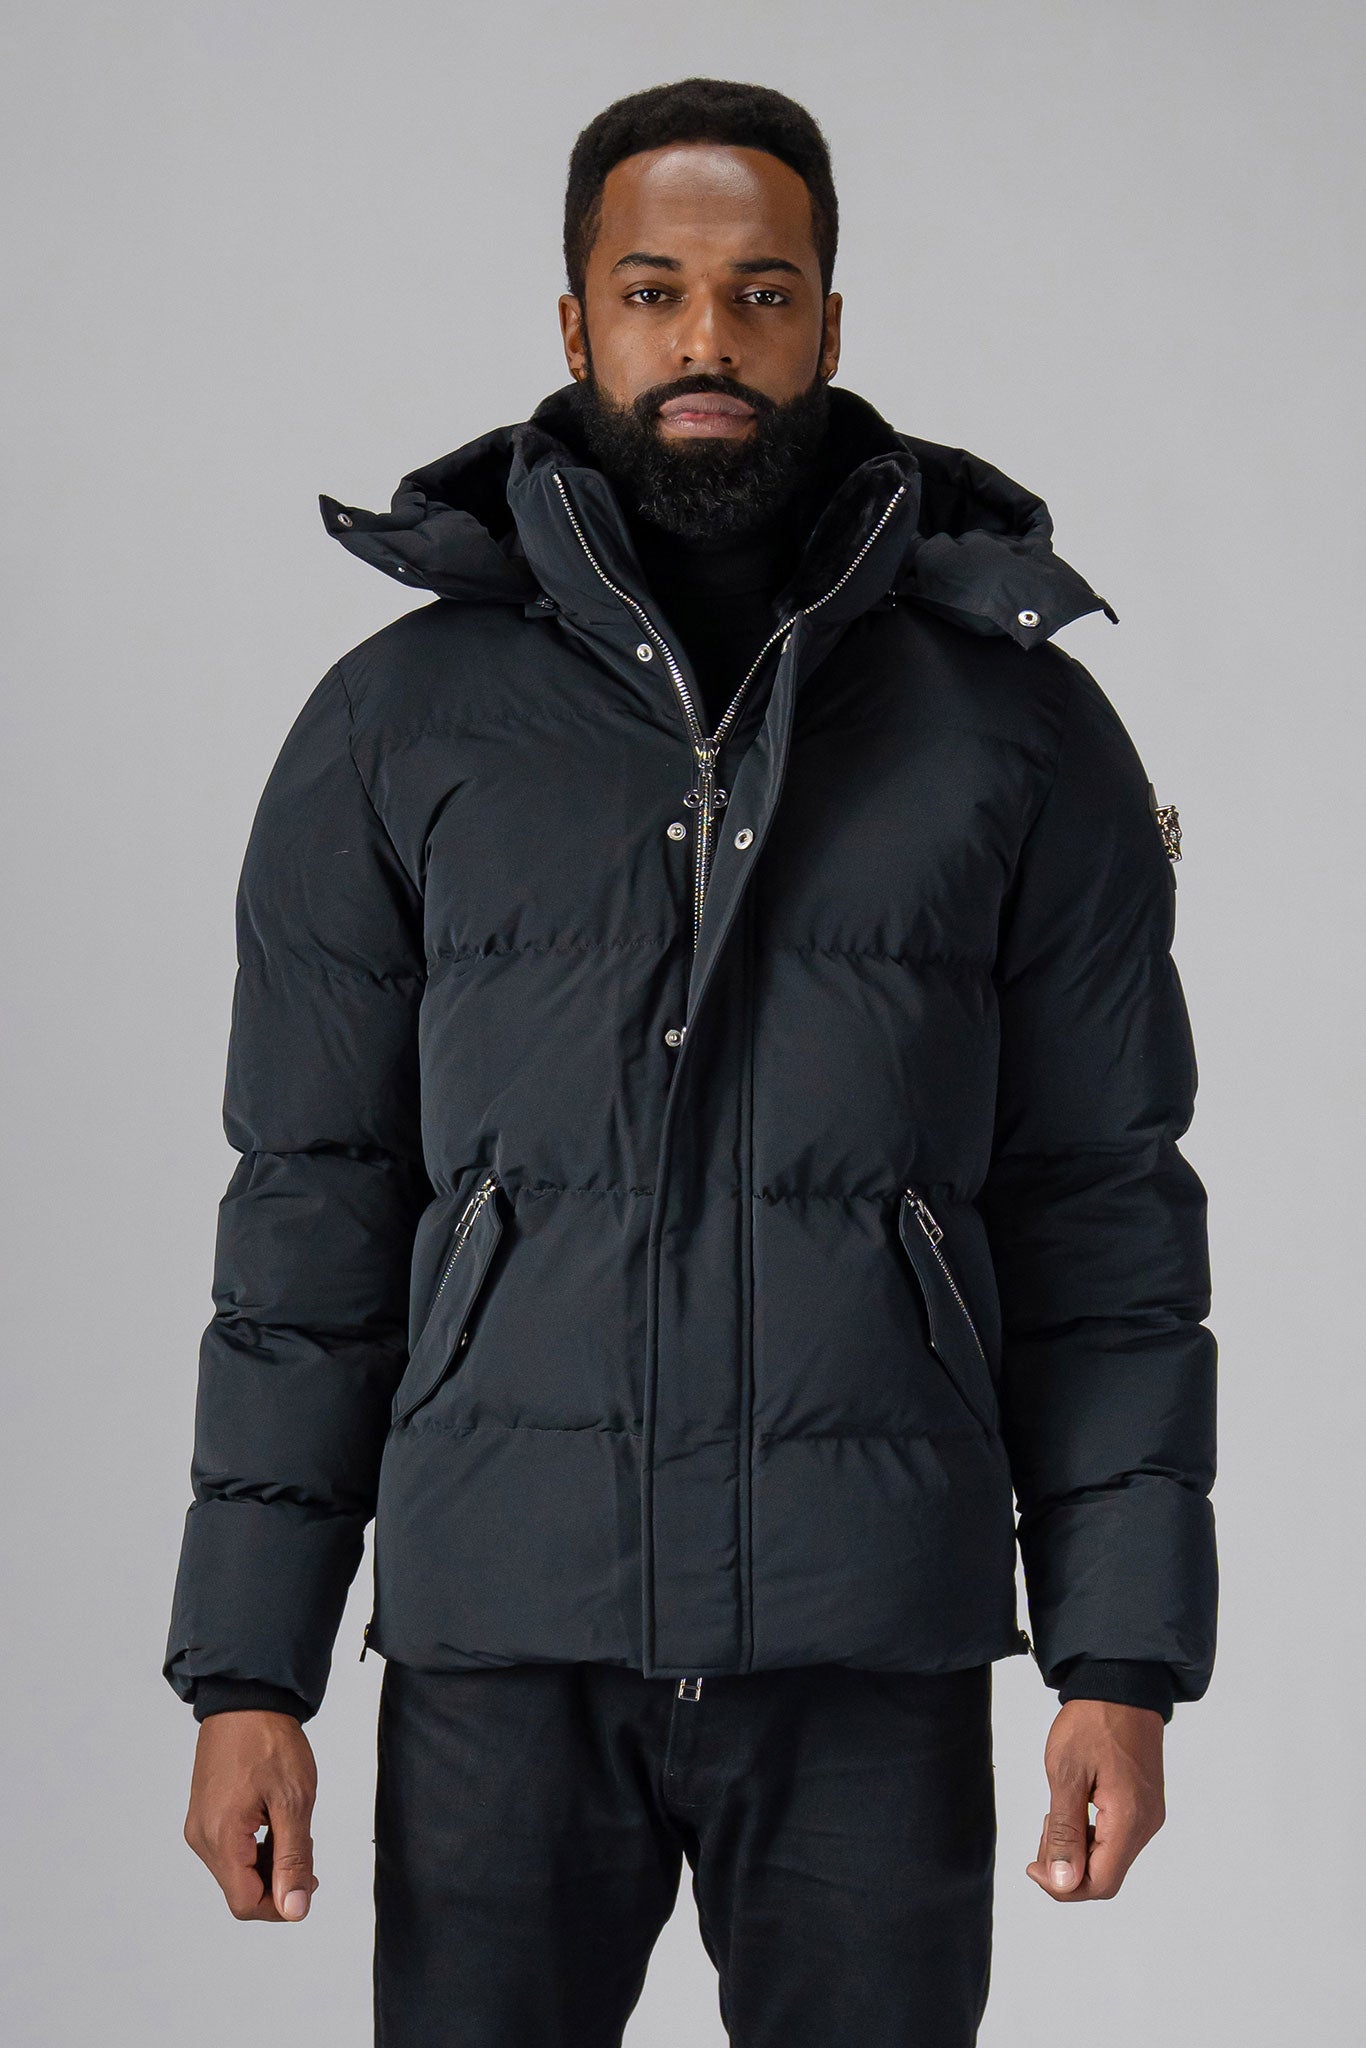 Woodpecker Men's Bumnester Winter coat. High-end Canadian designer winter coat for men in 